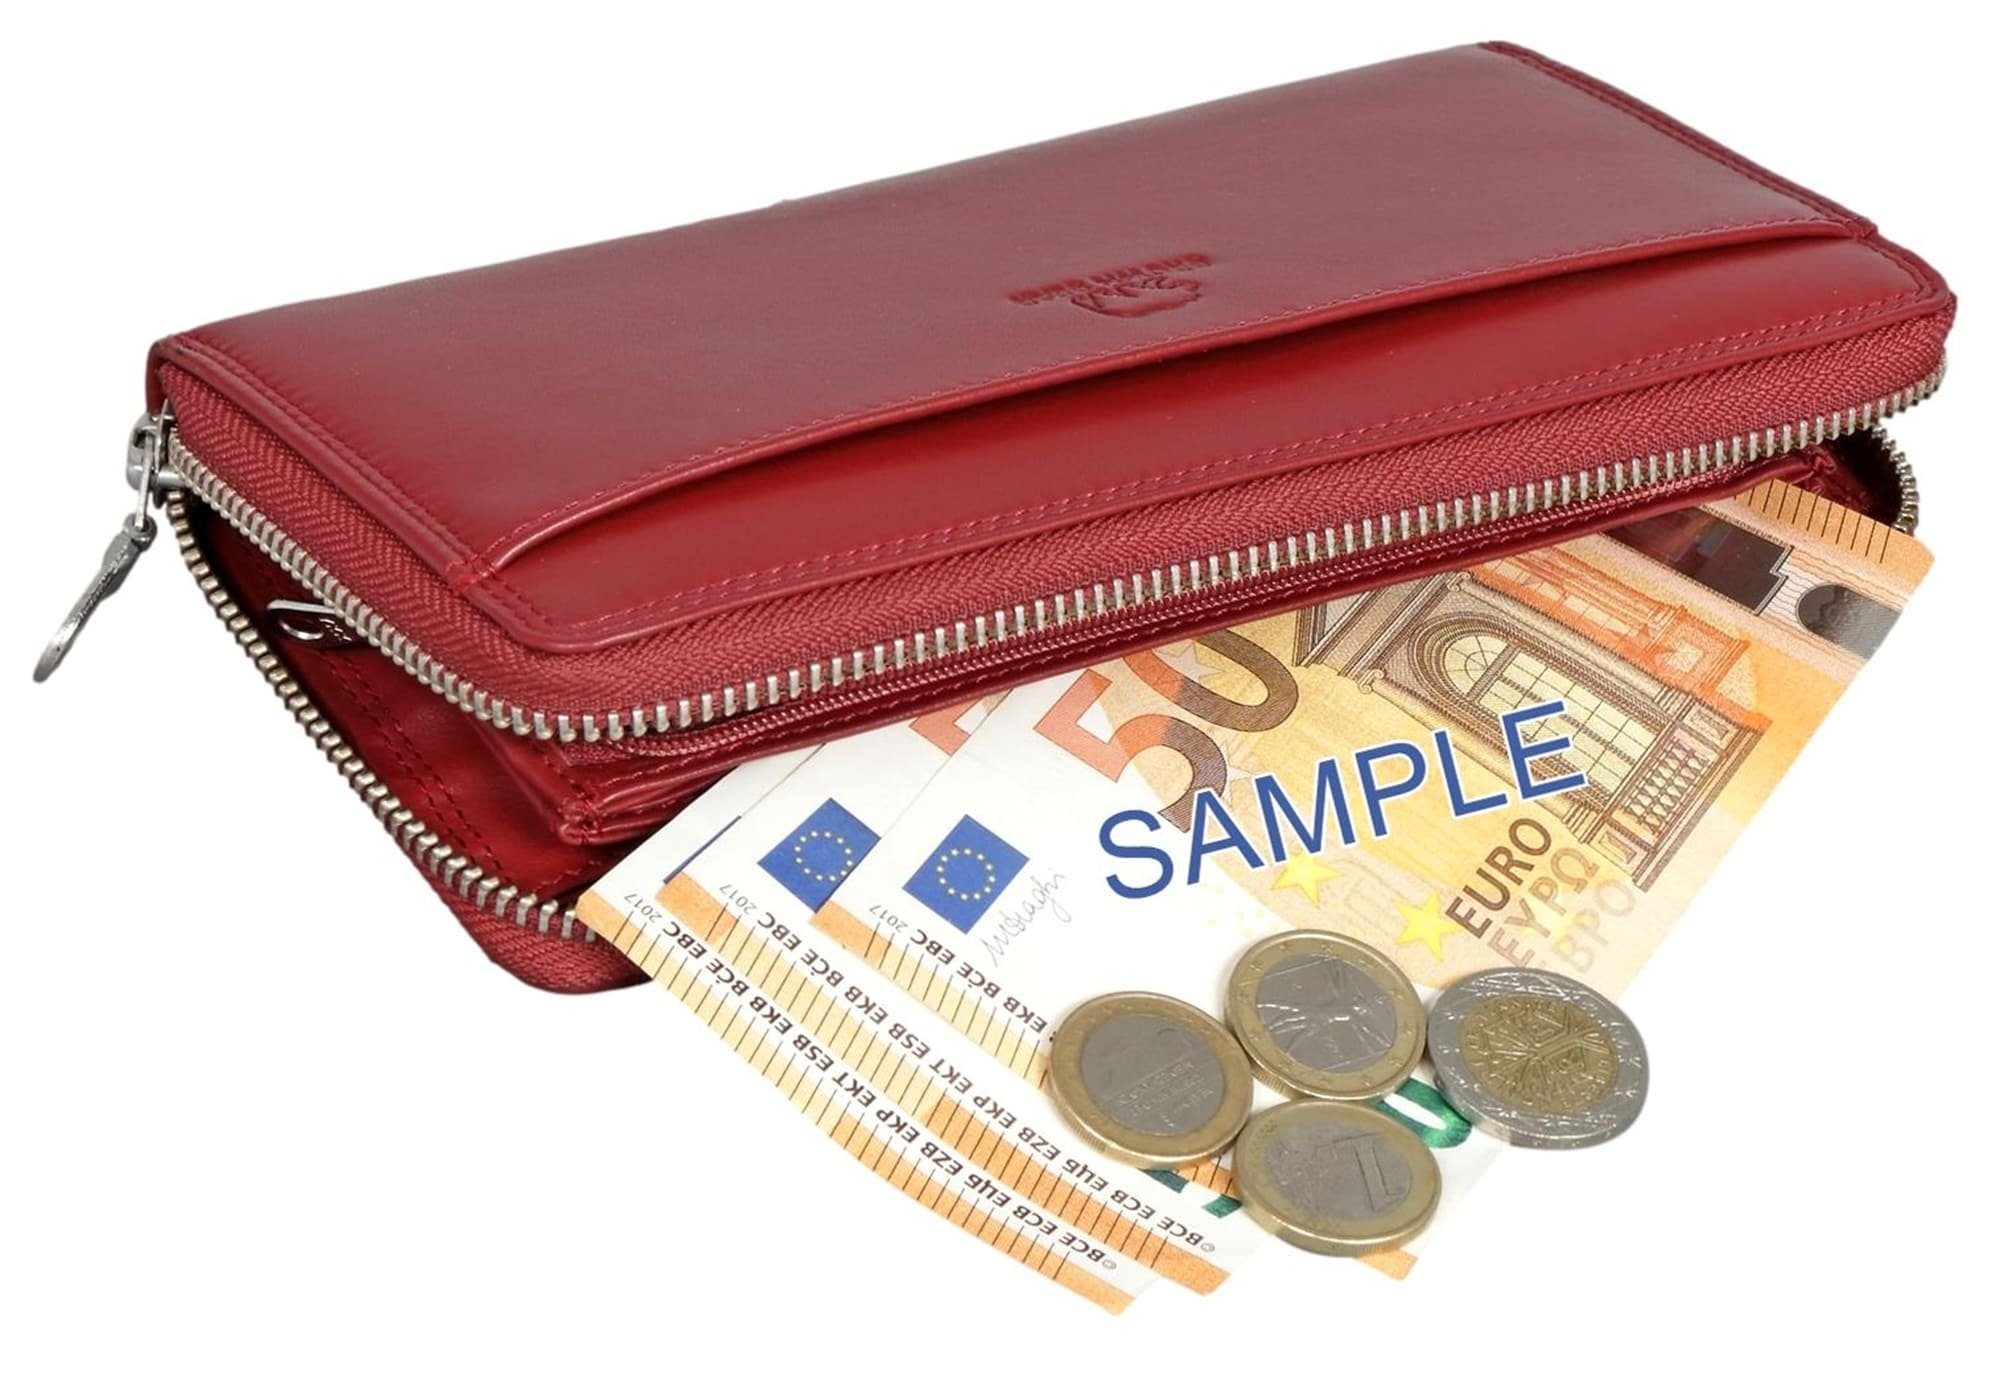 Modell 13 mit RFID-Schutz Bear Geldbörse Conny Brown Damenbörse, und lange - Rot Kartenfächern